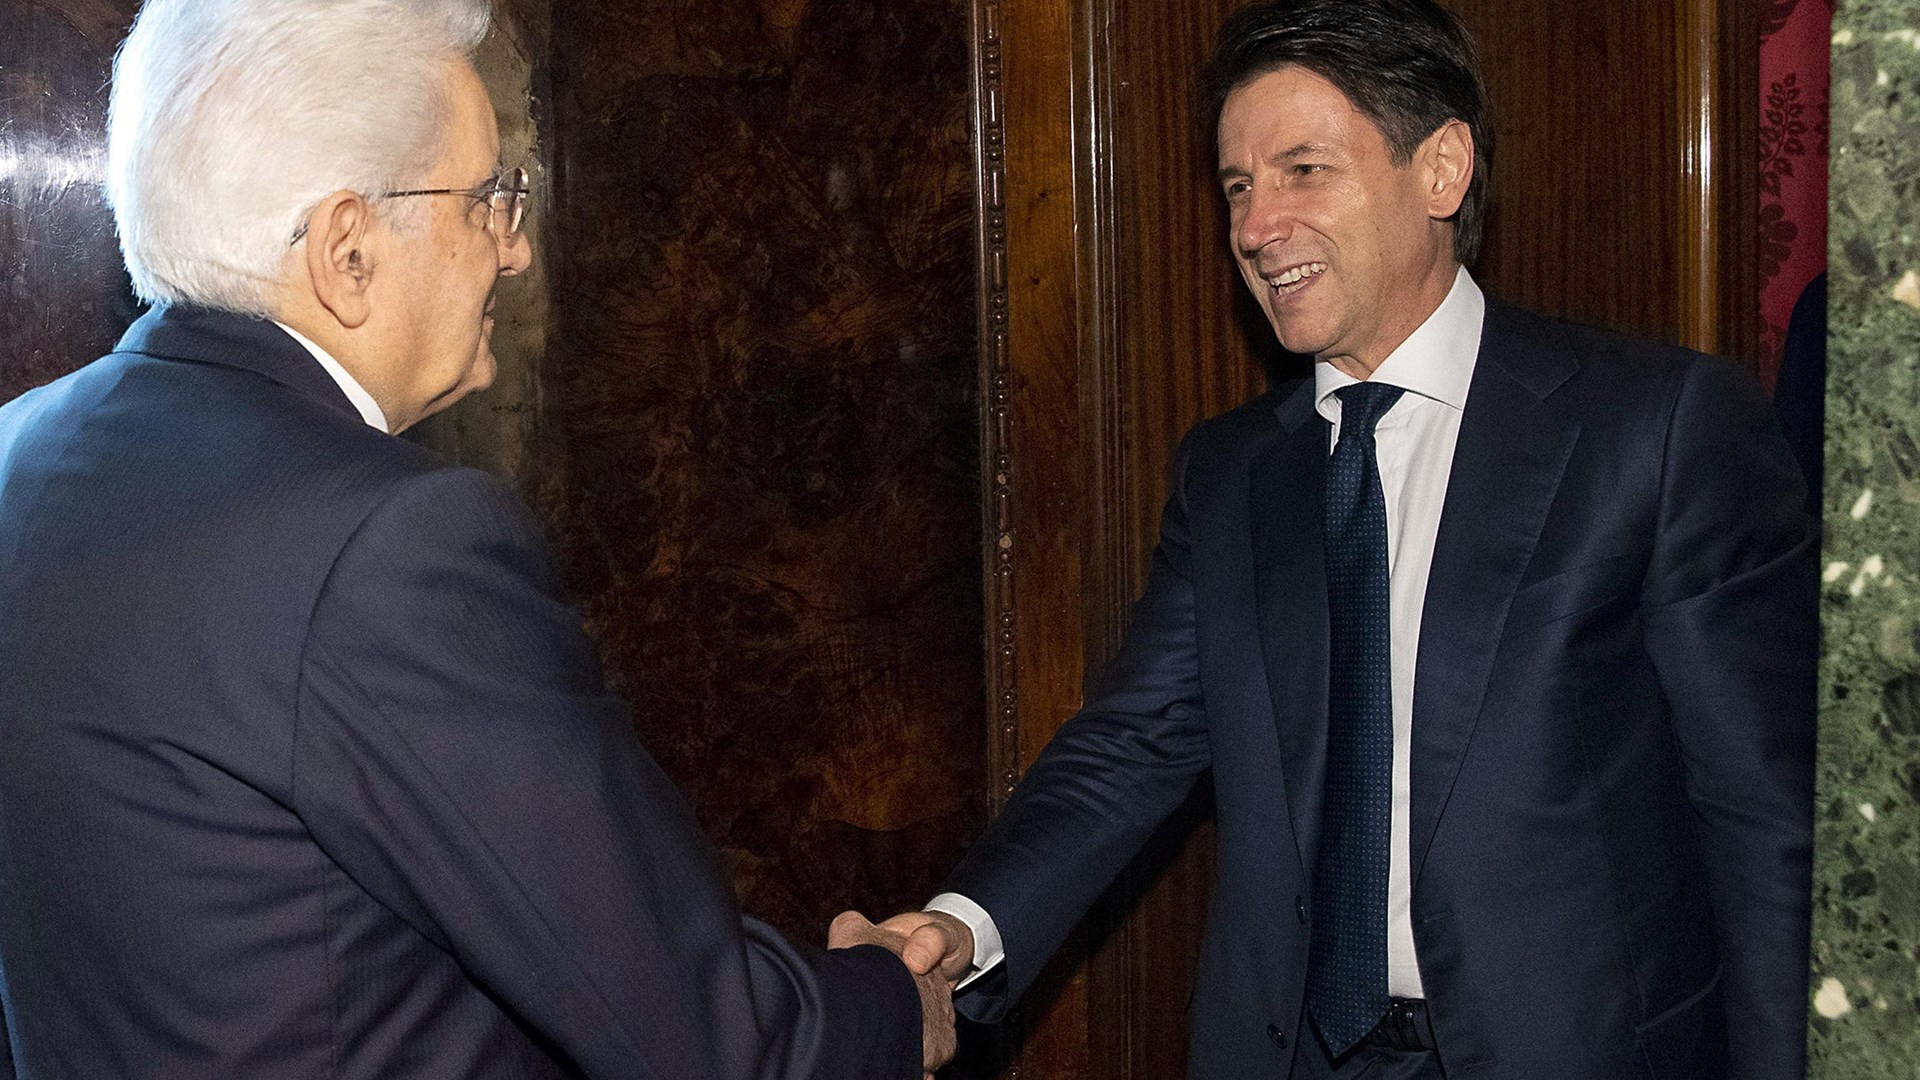 Ραγδαίες εξελίξεις στην Ιταλία: Παρέδωσε την εντολή σχηματισμού κυβέρνησης ο Κόντε – Ο Ματαρέλα δίνει το “χρίσμα” σε πρώην στέλεχος του ΔΝΤ